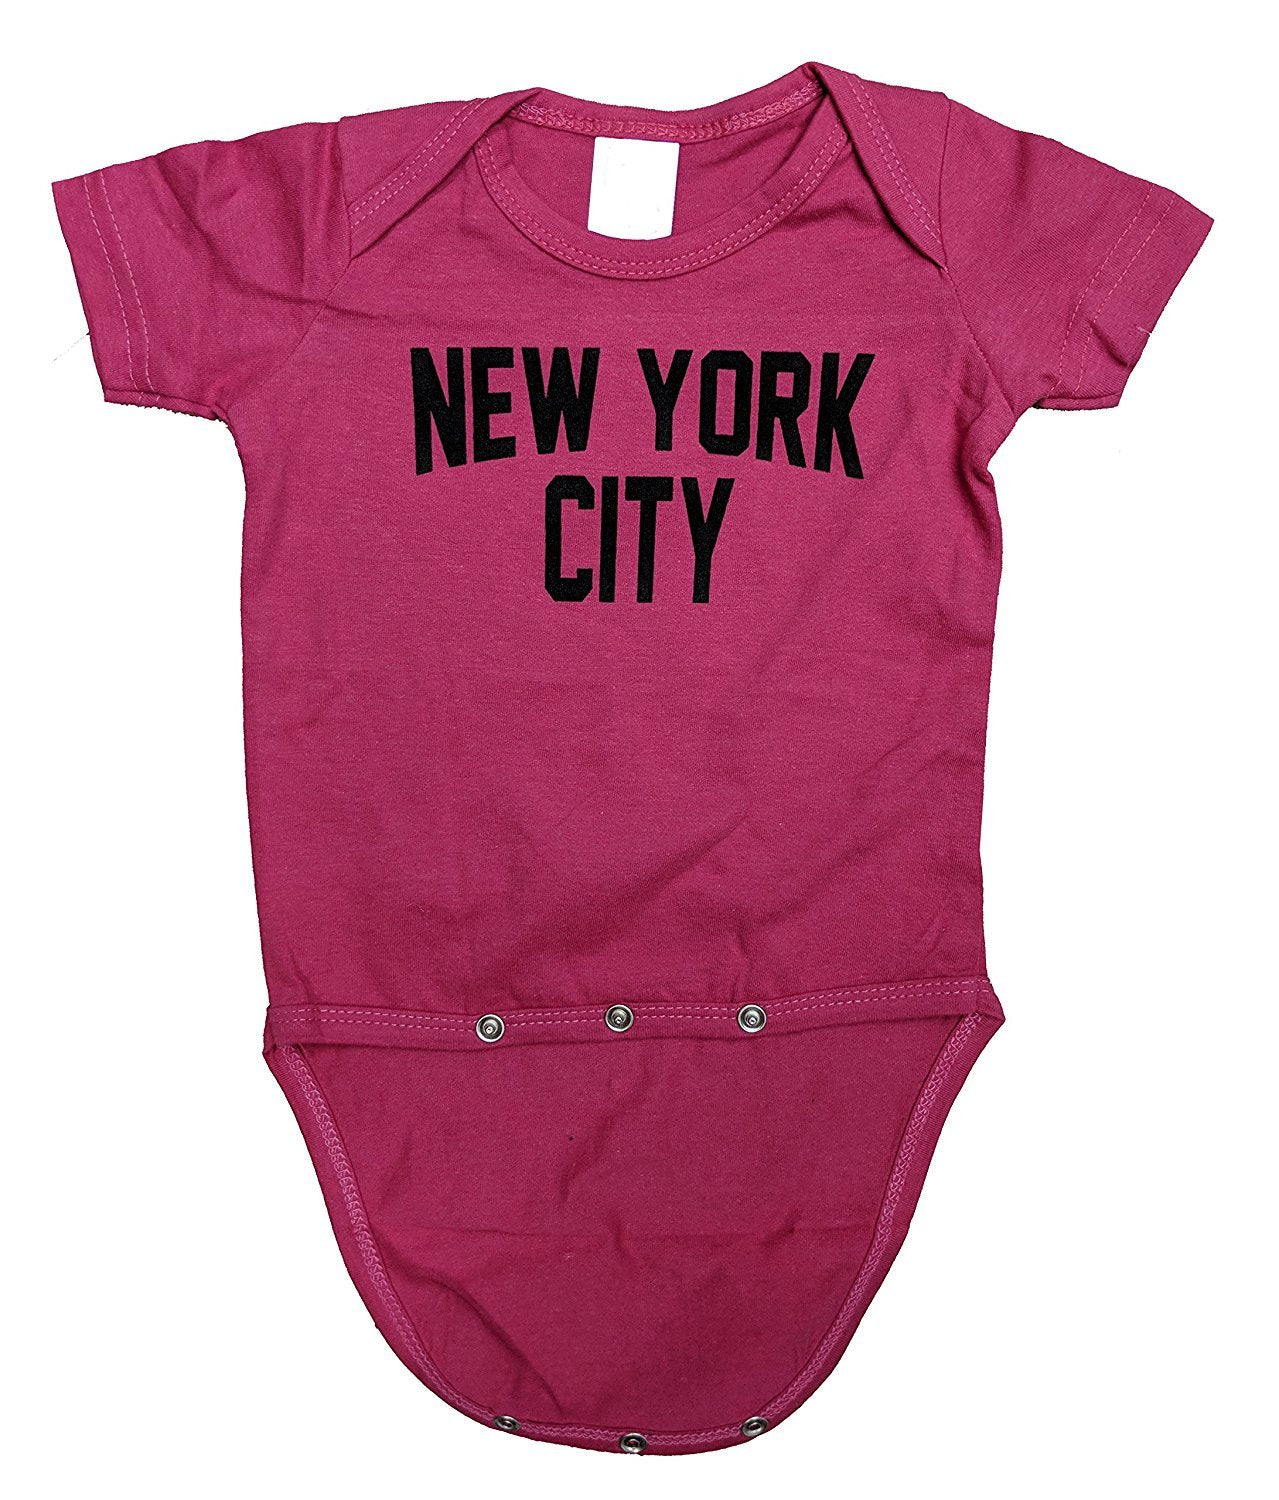 New York City Baby Strampler mit Siebdruck aus weicher Baumwolle